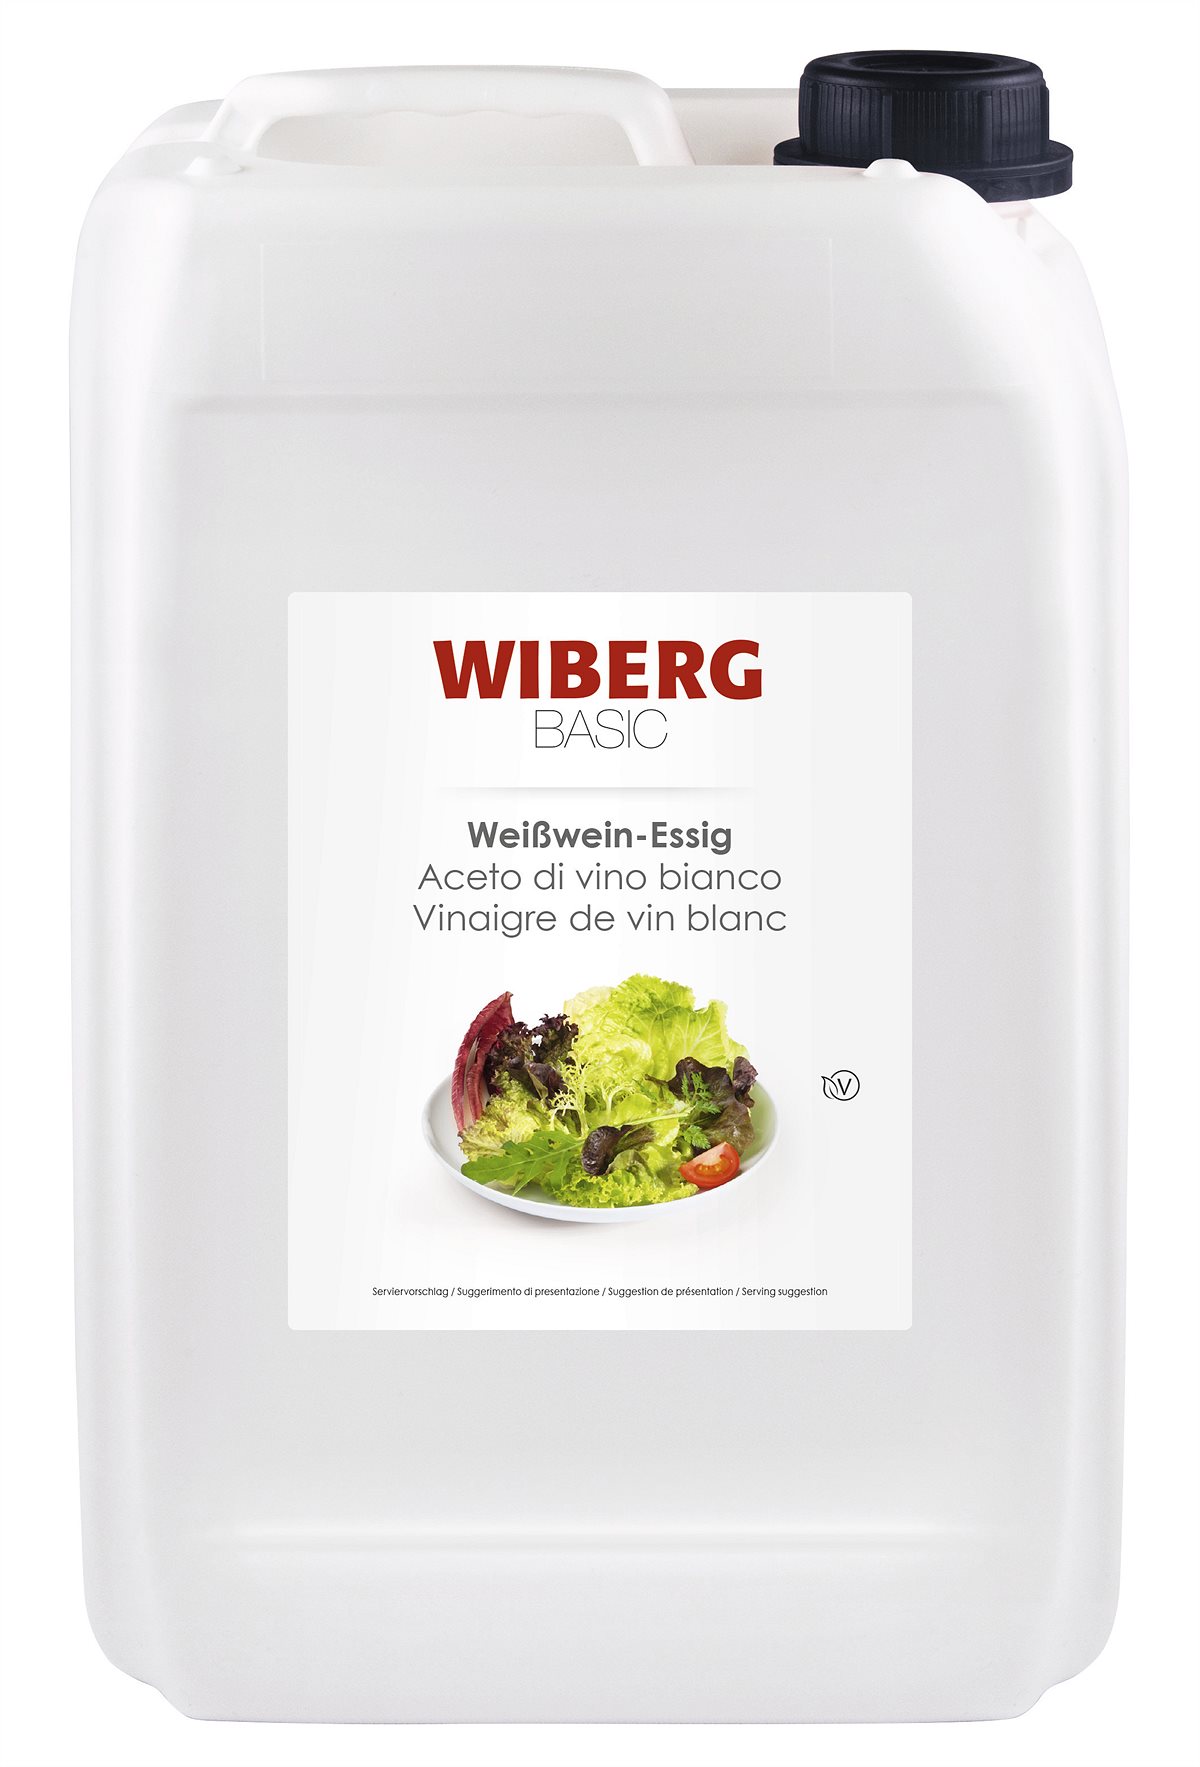 WIBERG BASIC Weißwein-Essig